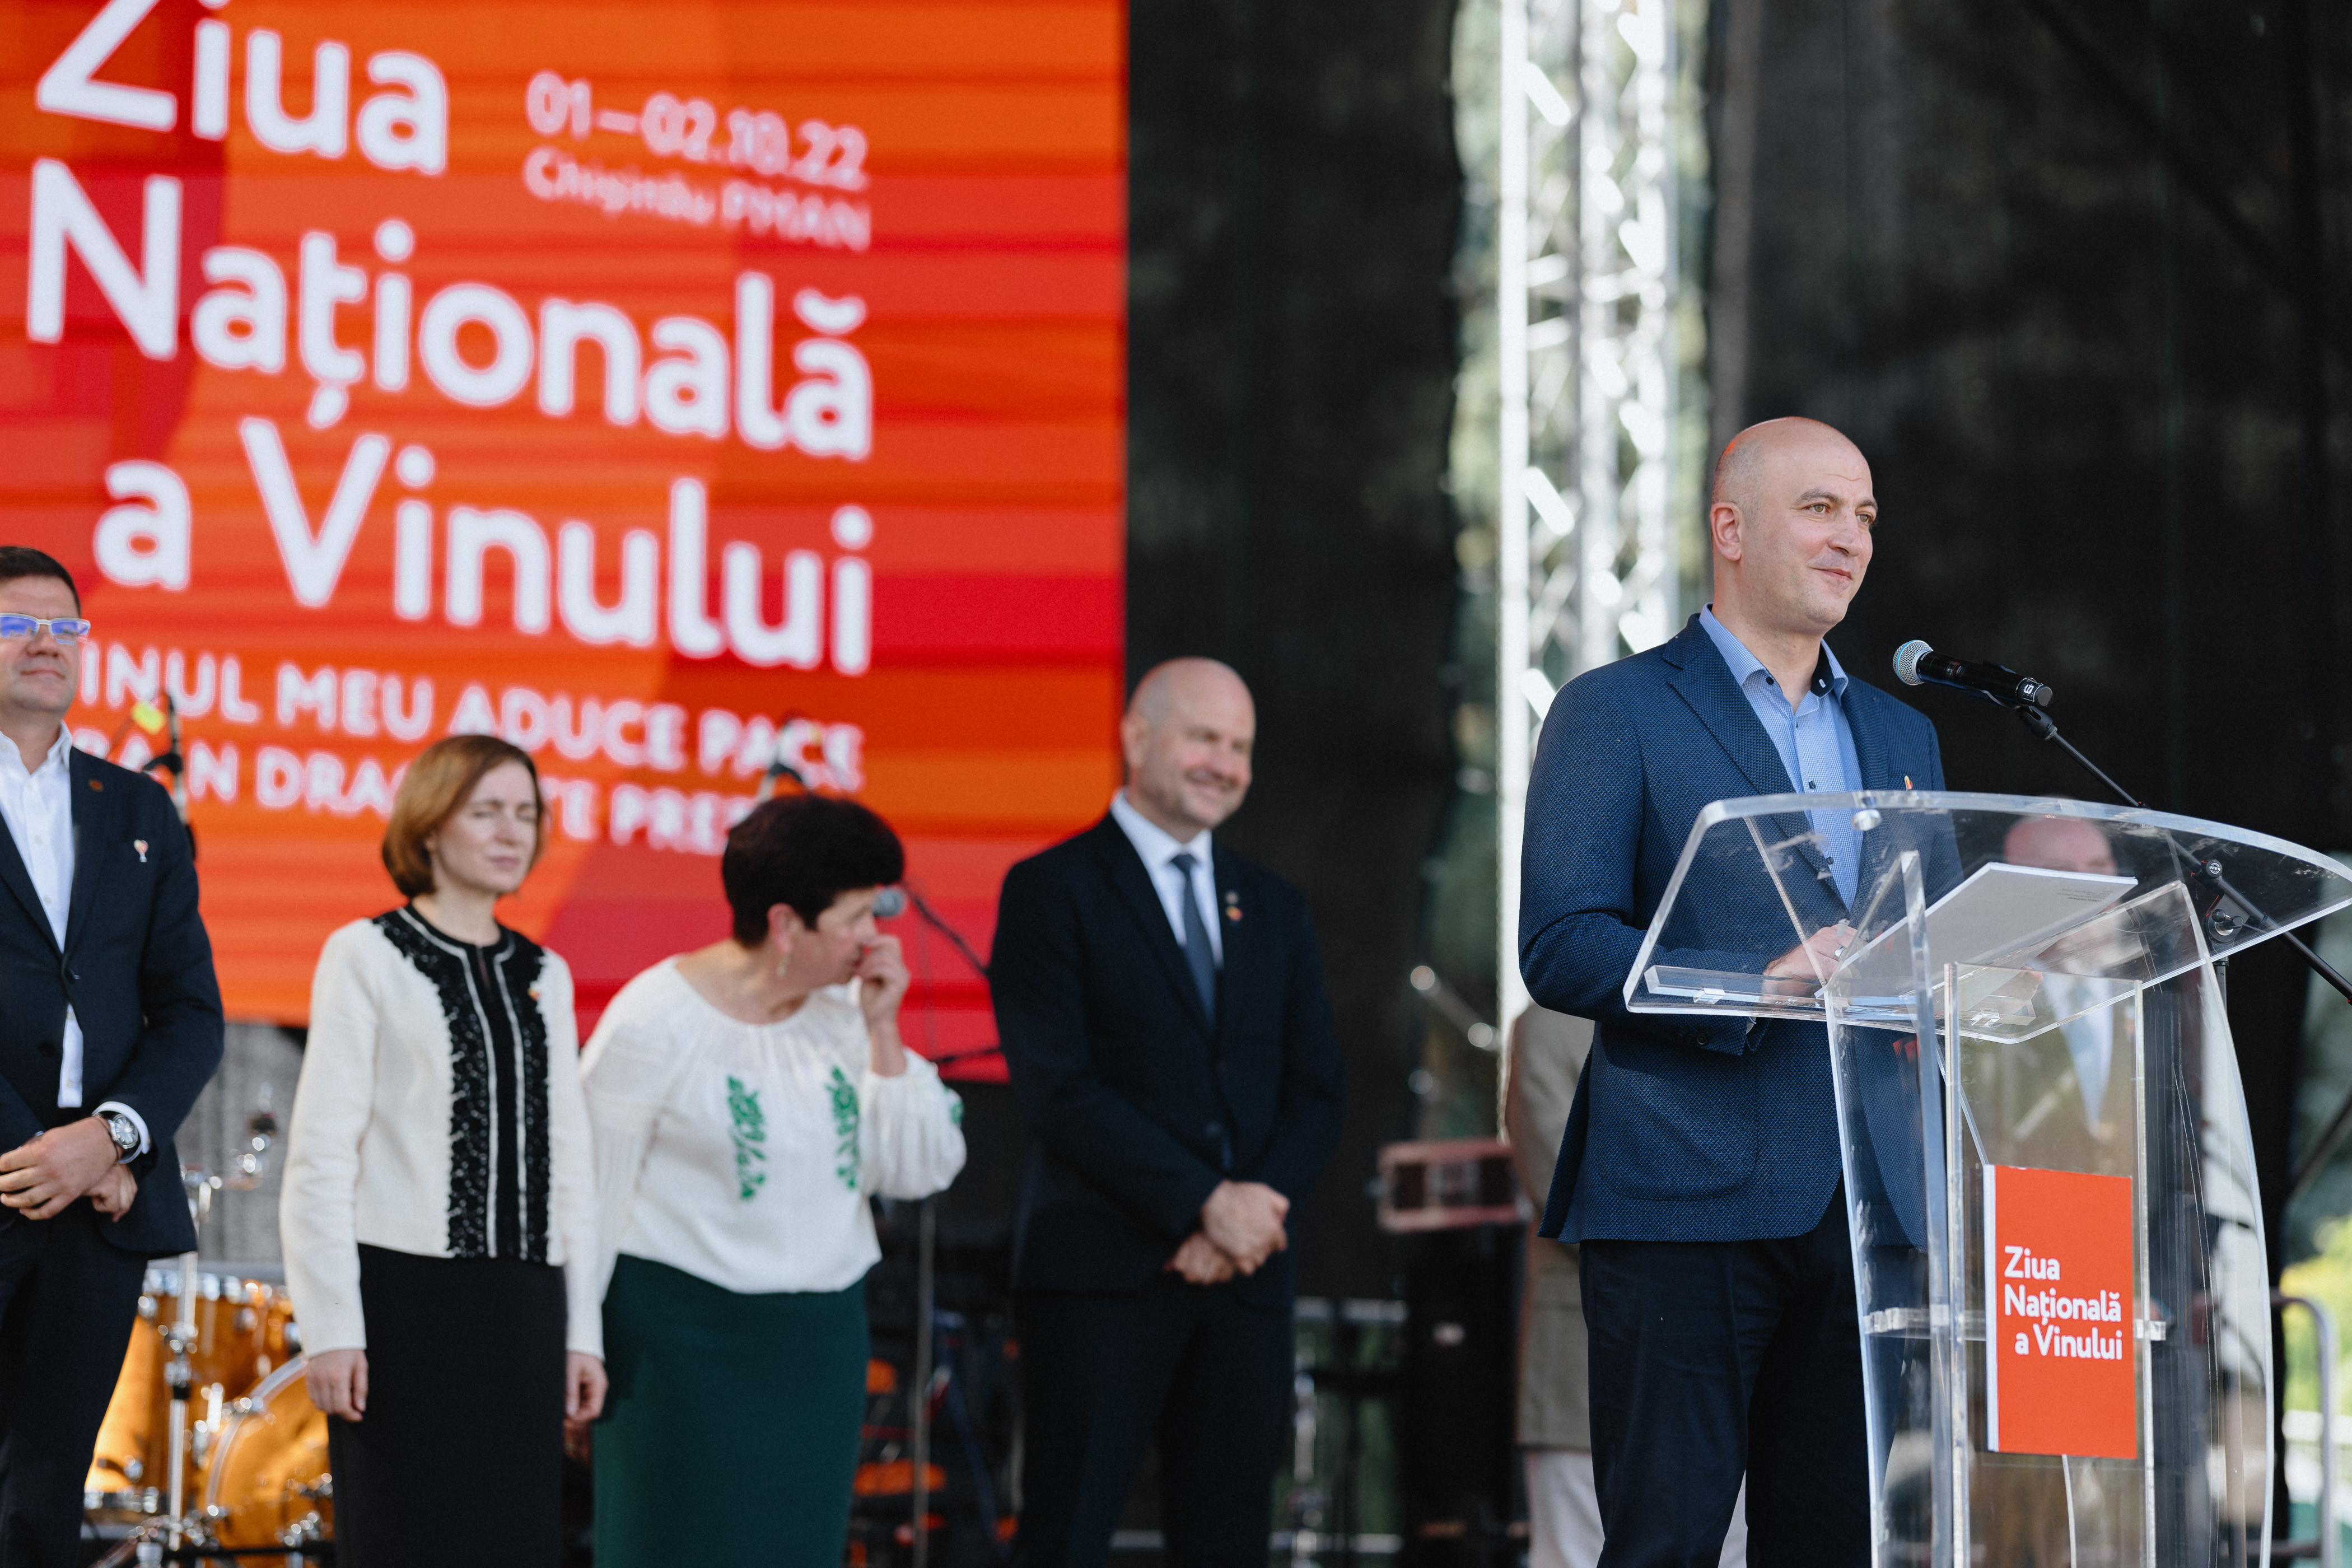 Giorgi Shagidze, Președintele maib, la ceremonia de inaugurare a Zilei Naționale a Vinului